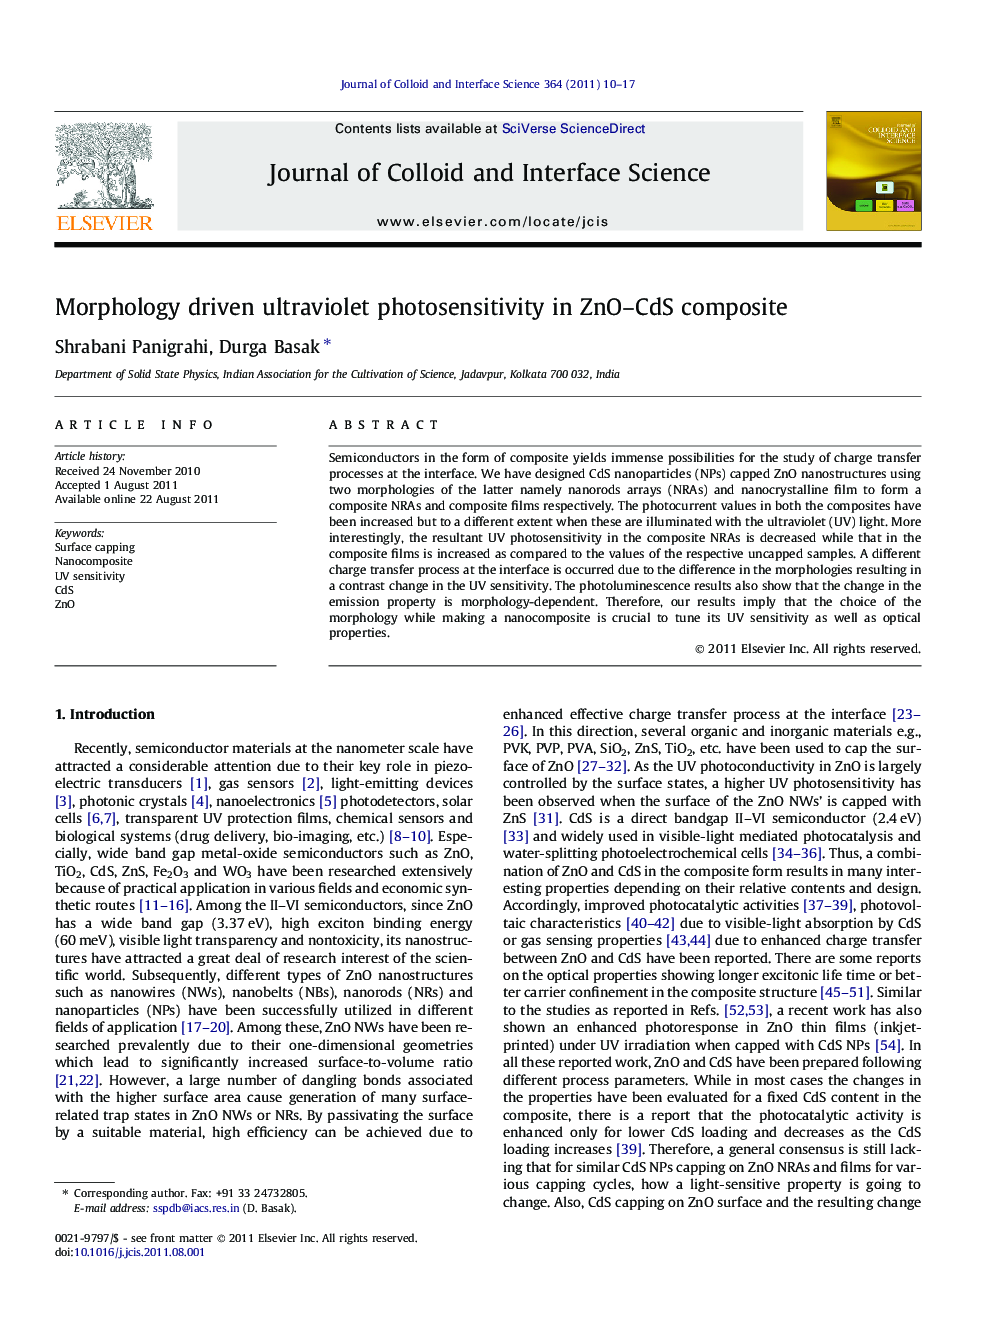 Morphology driven ultraviolet photosensitivity in ZnO-CdS composite